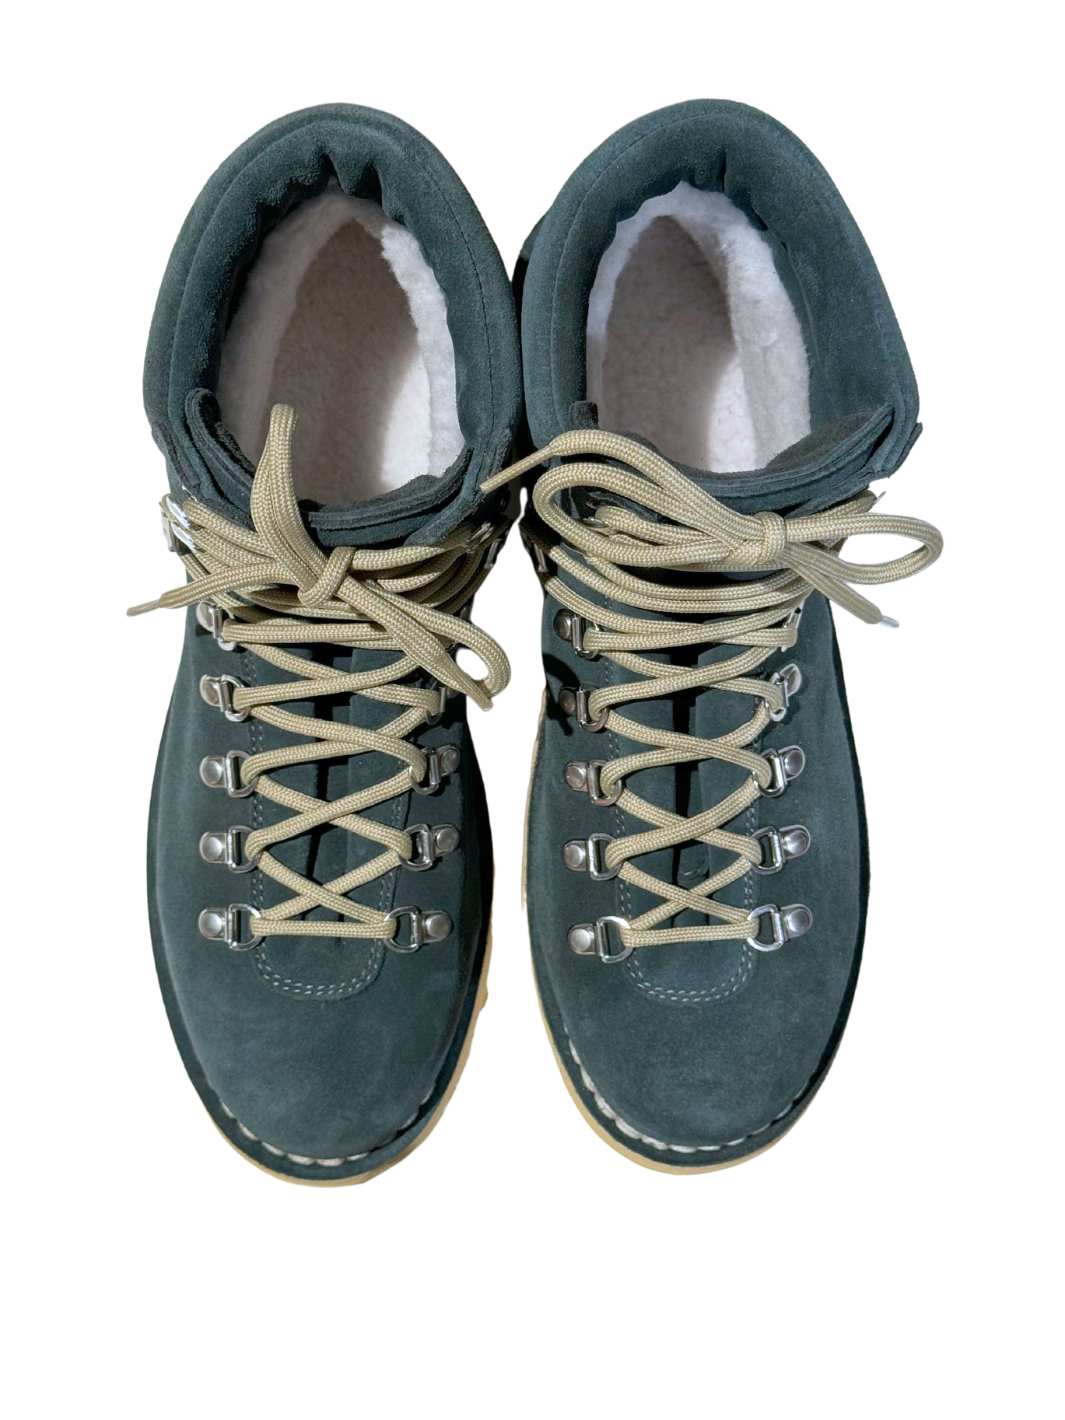 Diemme Shoes Boots | Roccia Vet Shearling Bottle Green Suede